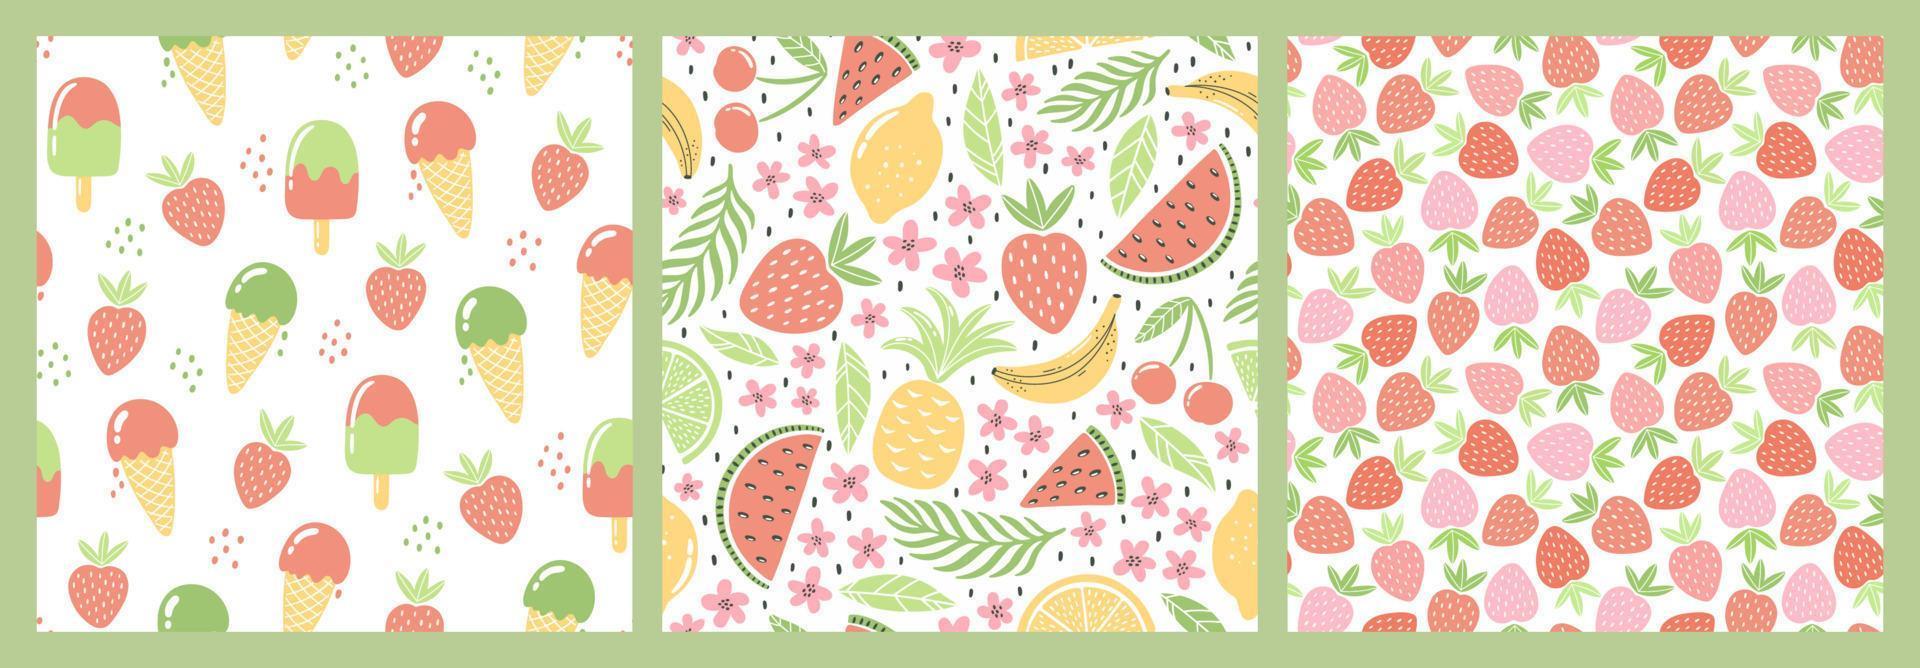 conjunto de patrones impecables con frutas coloridas y dulces para el diseño textil. fondo de verano en colores brillantes. ilustraciones vectoriales de moda dibujadas a mano. vector